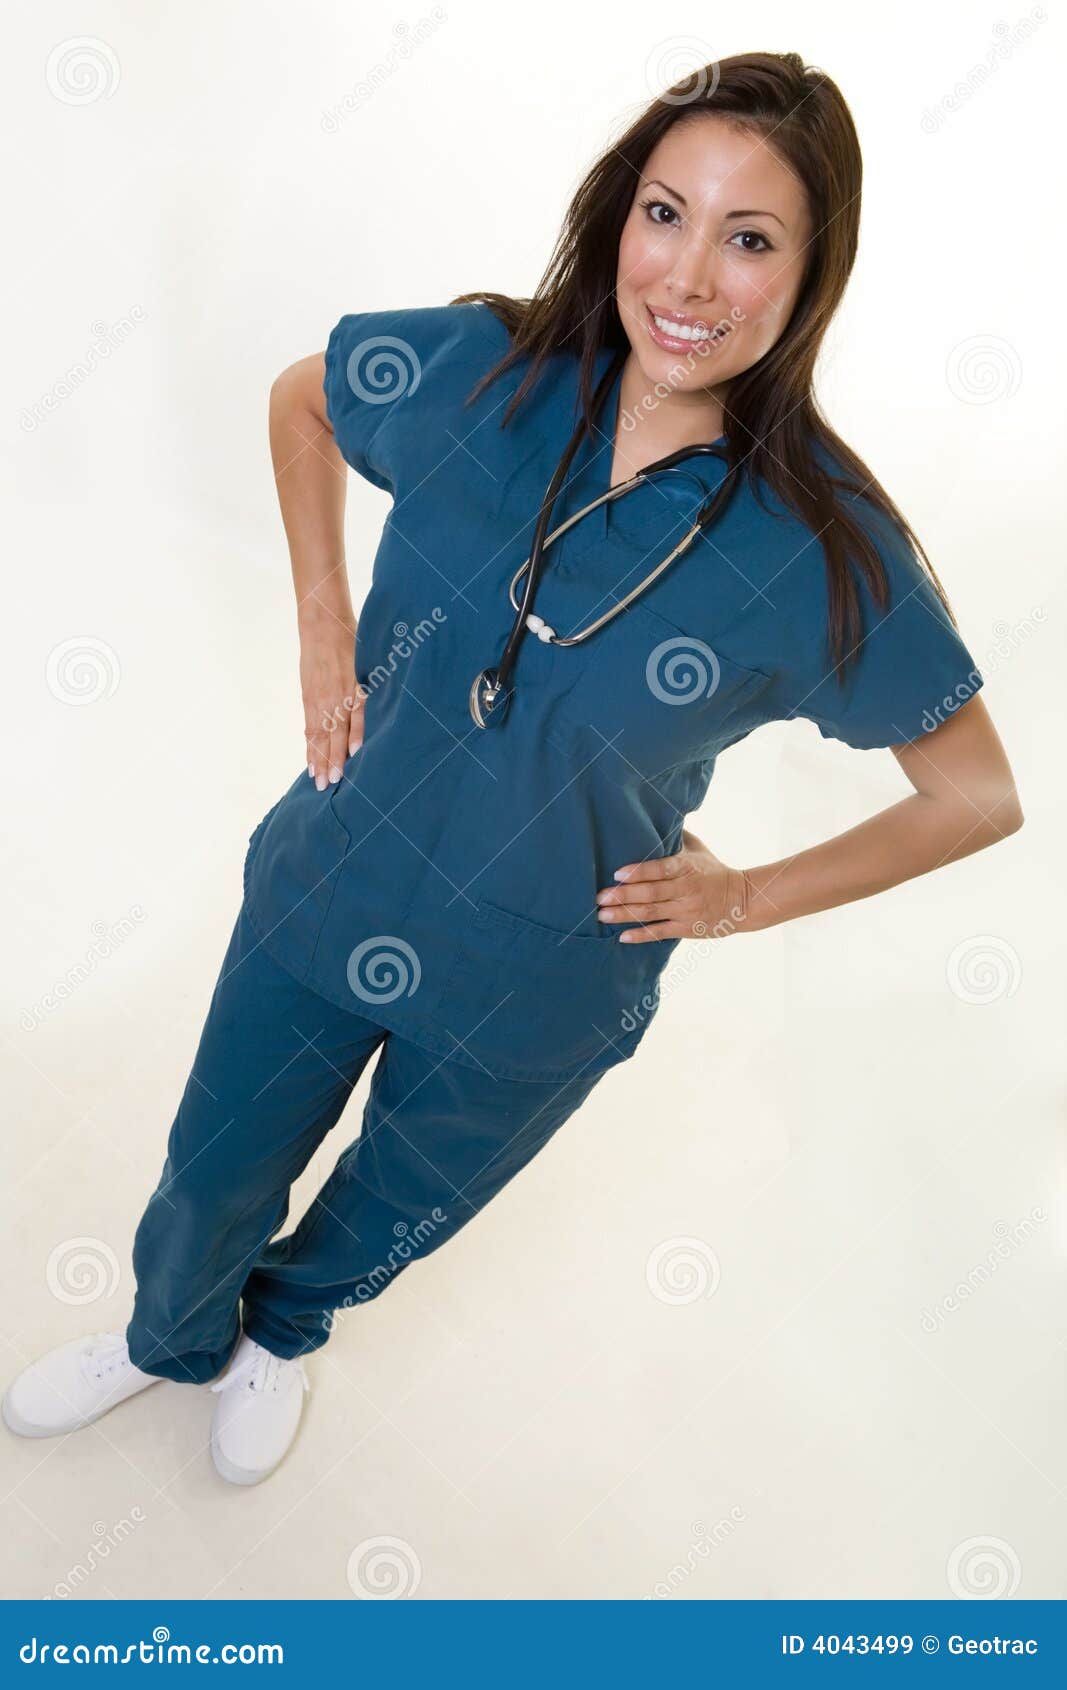 Freundliche Krankenschwester. Volle Karosserie einer Frauen-Gesundheitspflegearbeitskraft des attraktiven jungen Brunette hispanischen, die mit den Händen auf Hüften mit einem lächelnden freundlichen Ausdruck steht